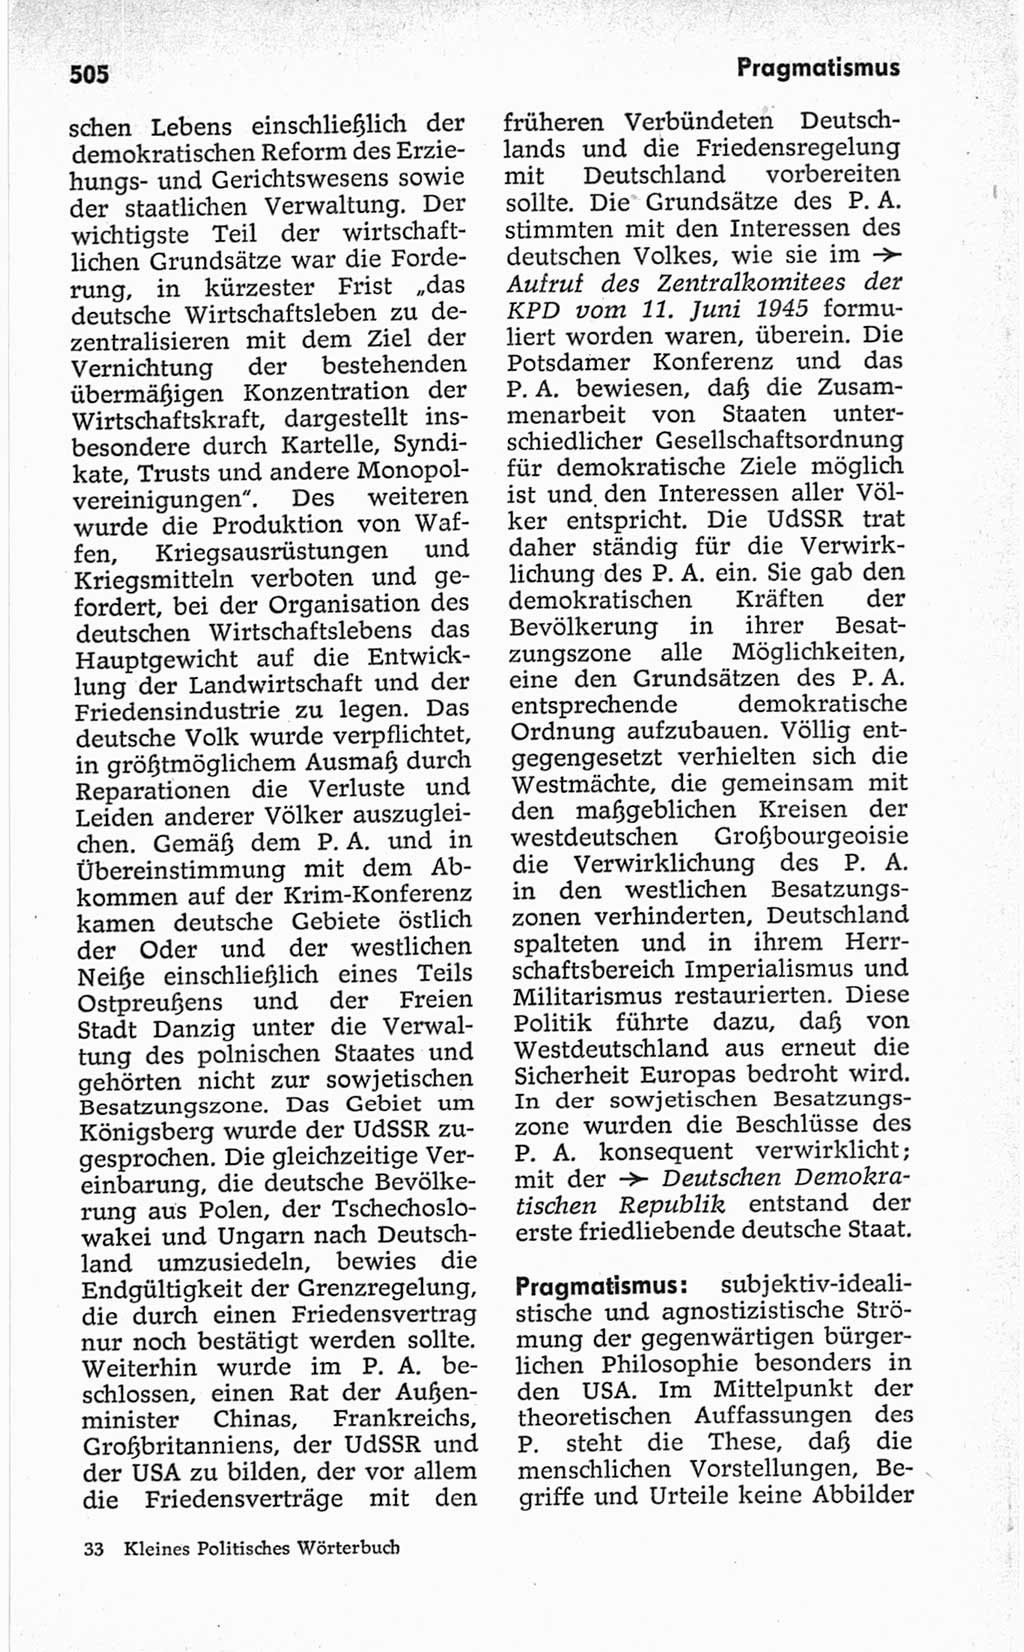 Kleines politisches Wörterbuch [Deutsche Demokratische Republik (DDR)] 1967, Seite 505 (Kl. pol. Wb. DDR 1967, S. 505)